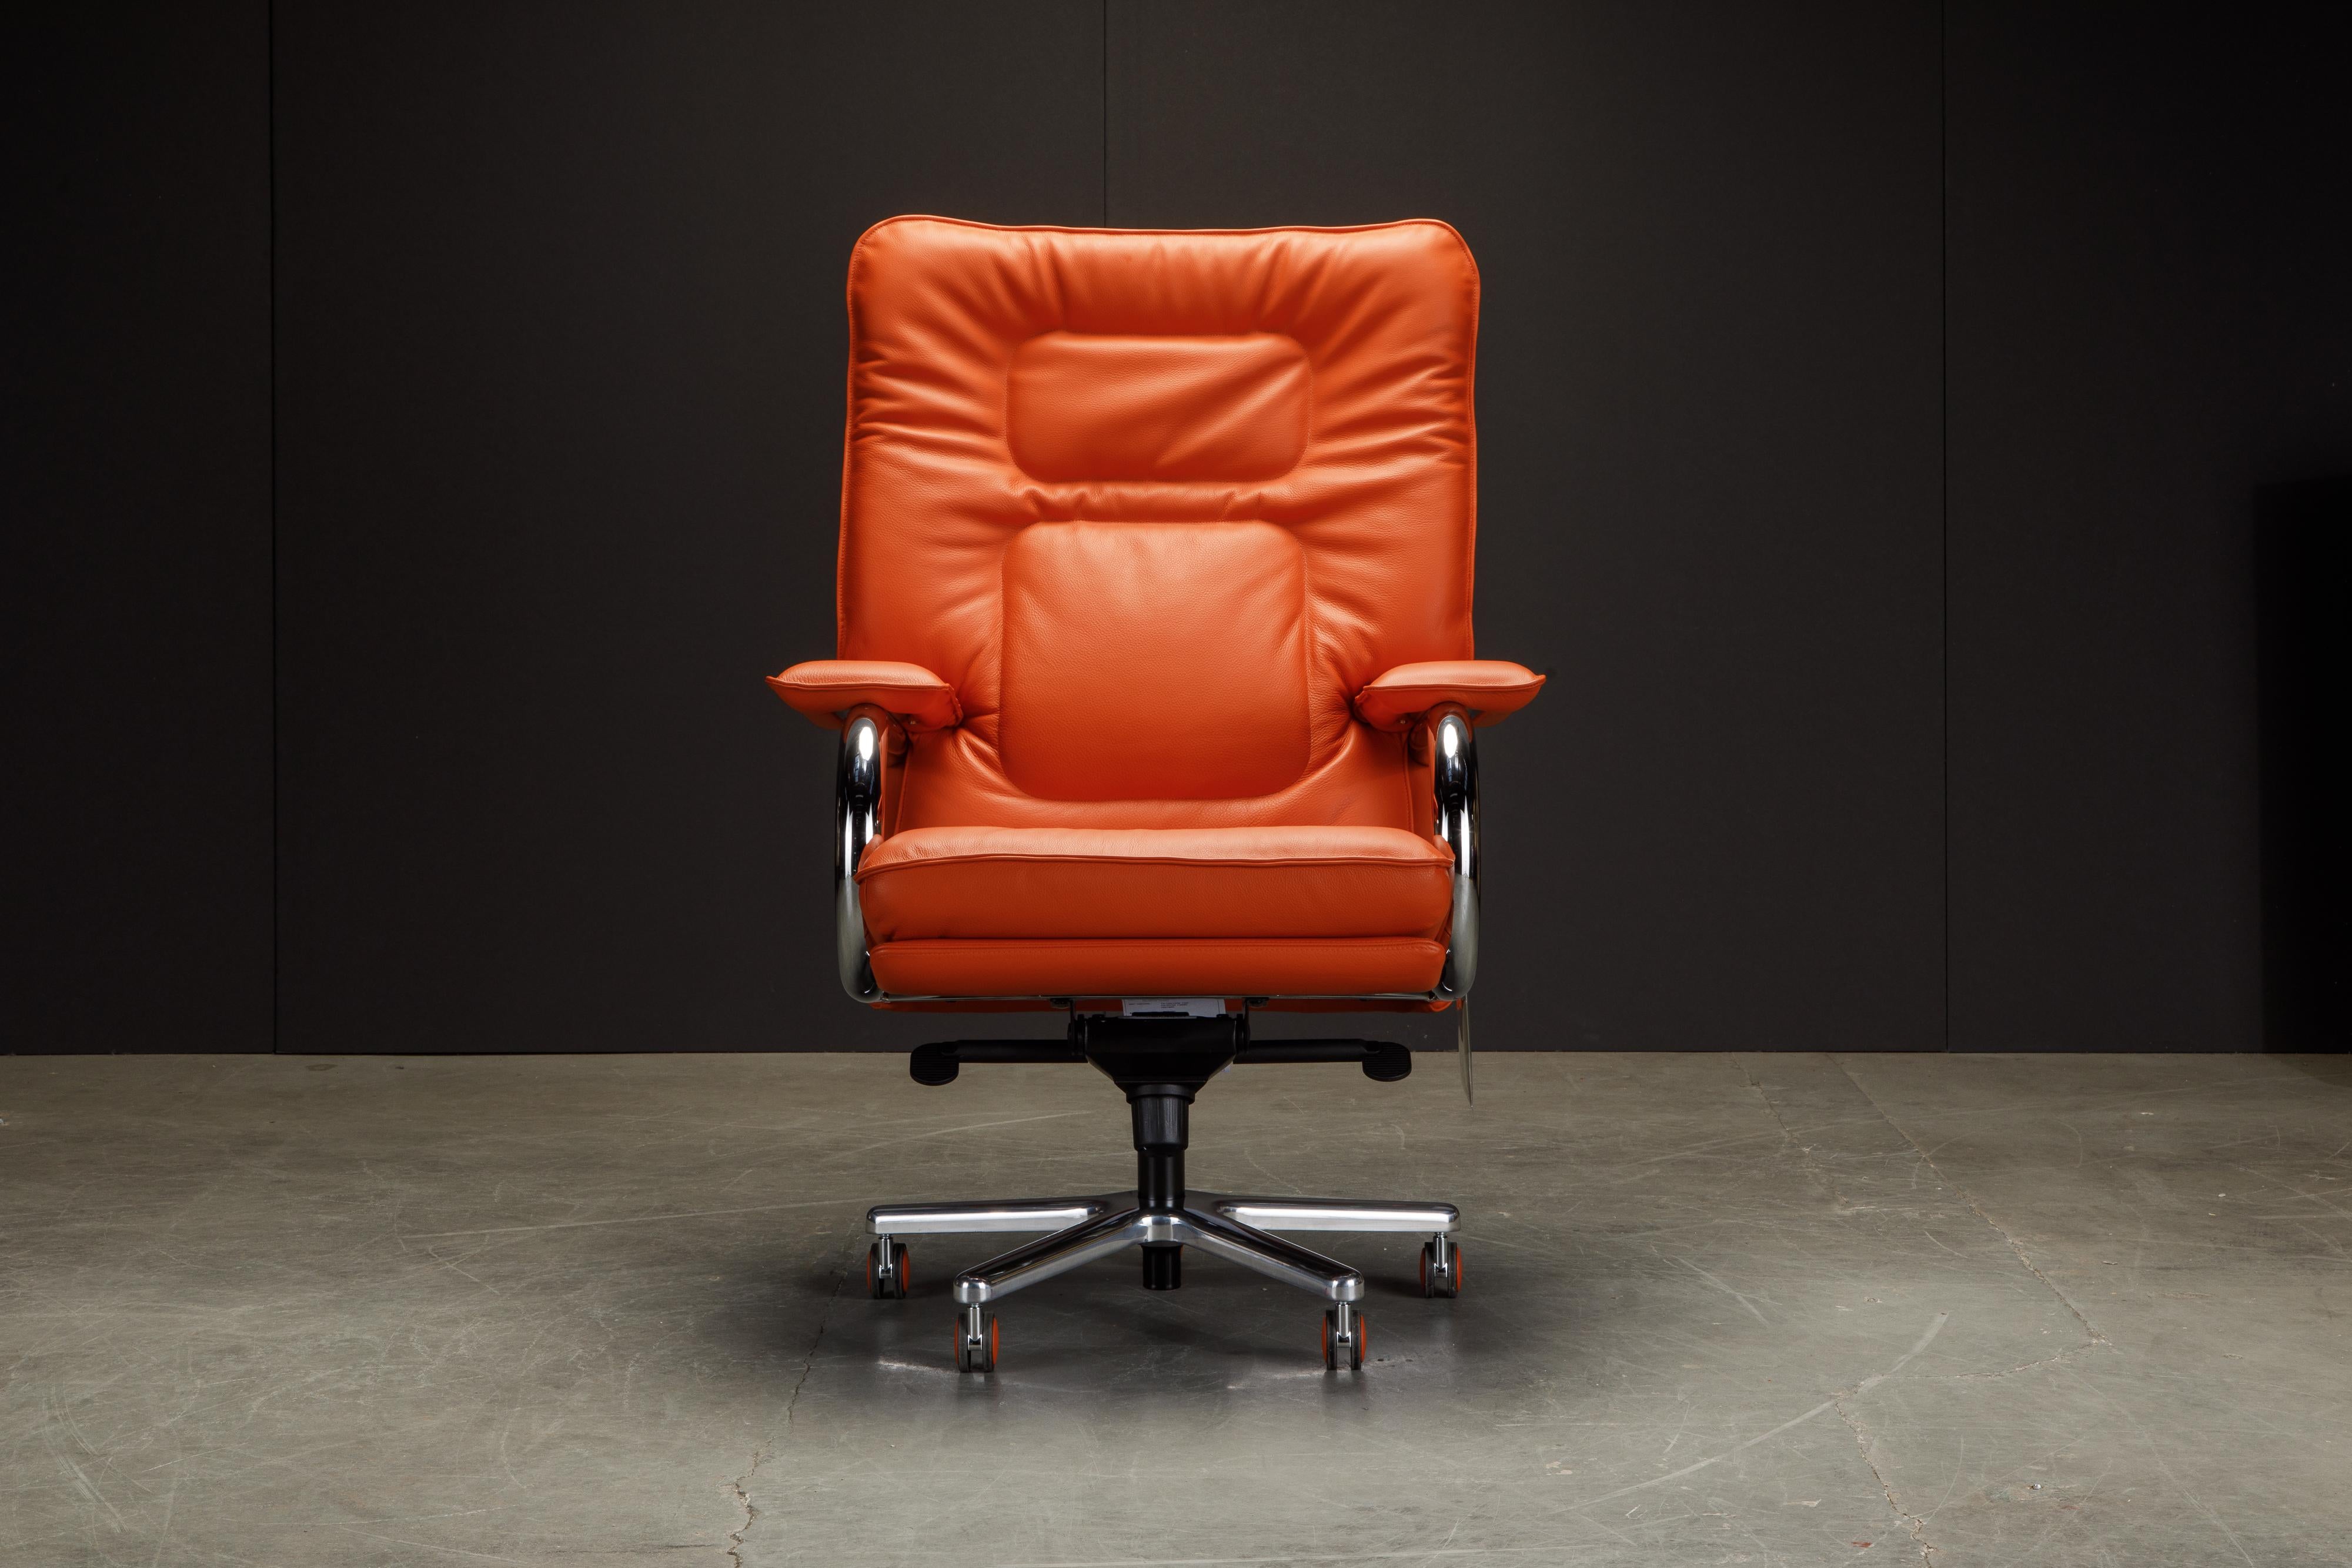 Cet incroyable fauteuil de direction s'appelle 'Big', il a été conçu par Guido Faleschini pour i4 Mariani. Conçu à l'origine dans les années 1970, cet exemplaire a été récemment produit dans un magnifique cuir orange de couleur pop. 

Un style si